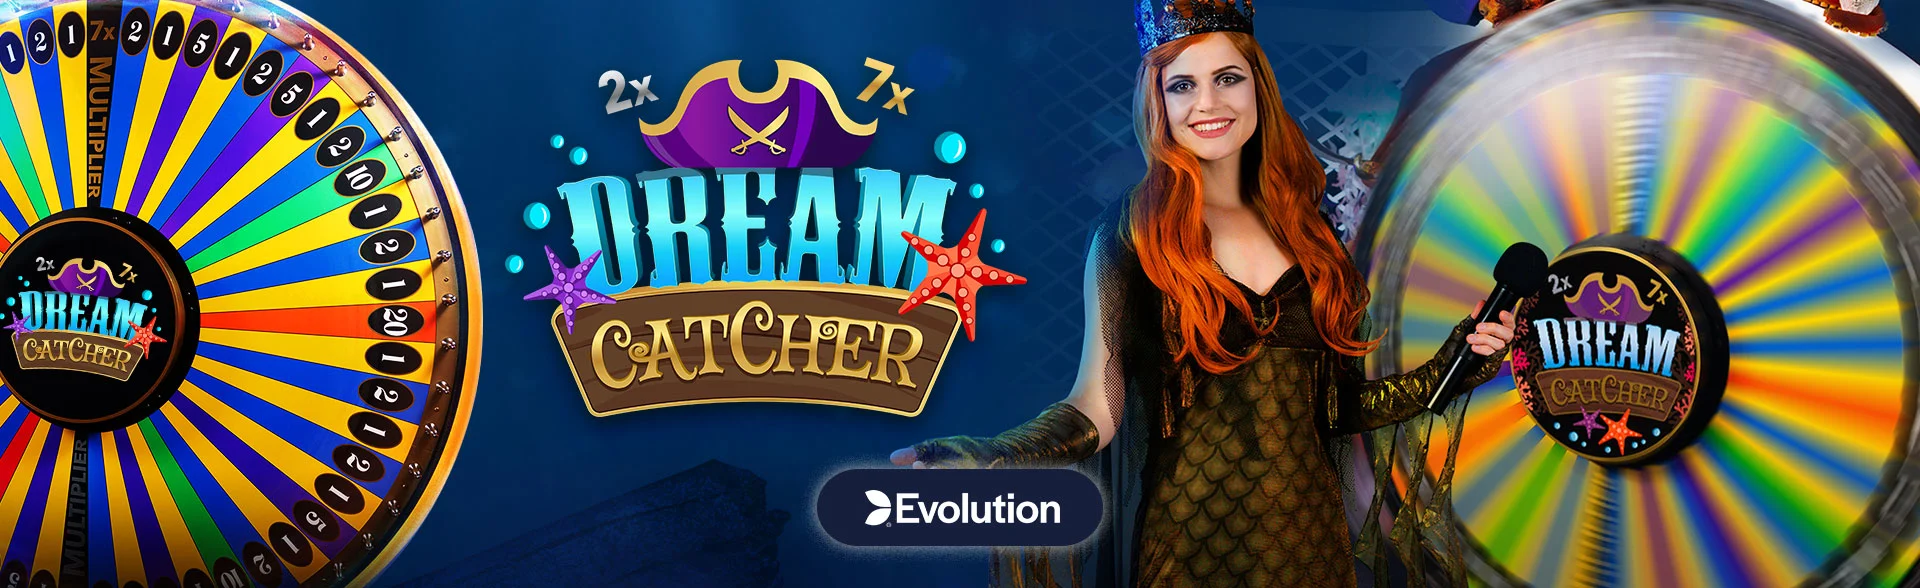 Dream Catcher Casino Game Review